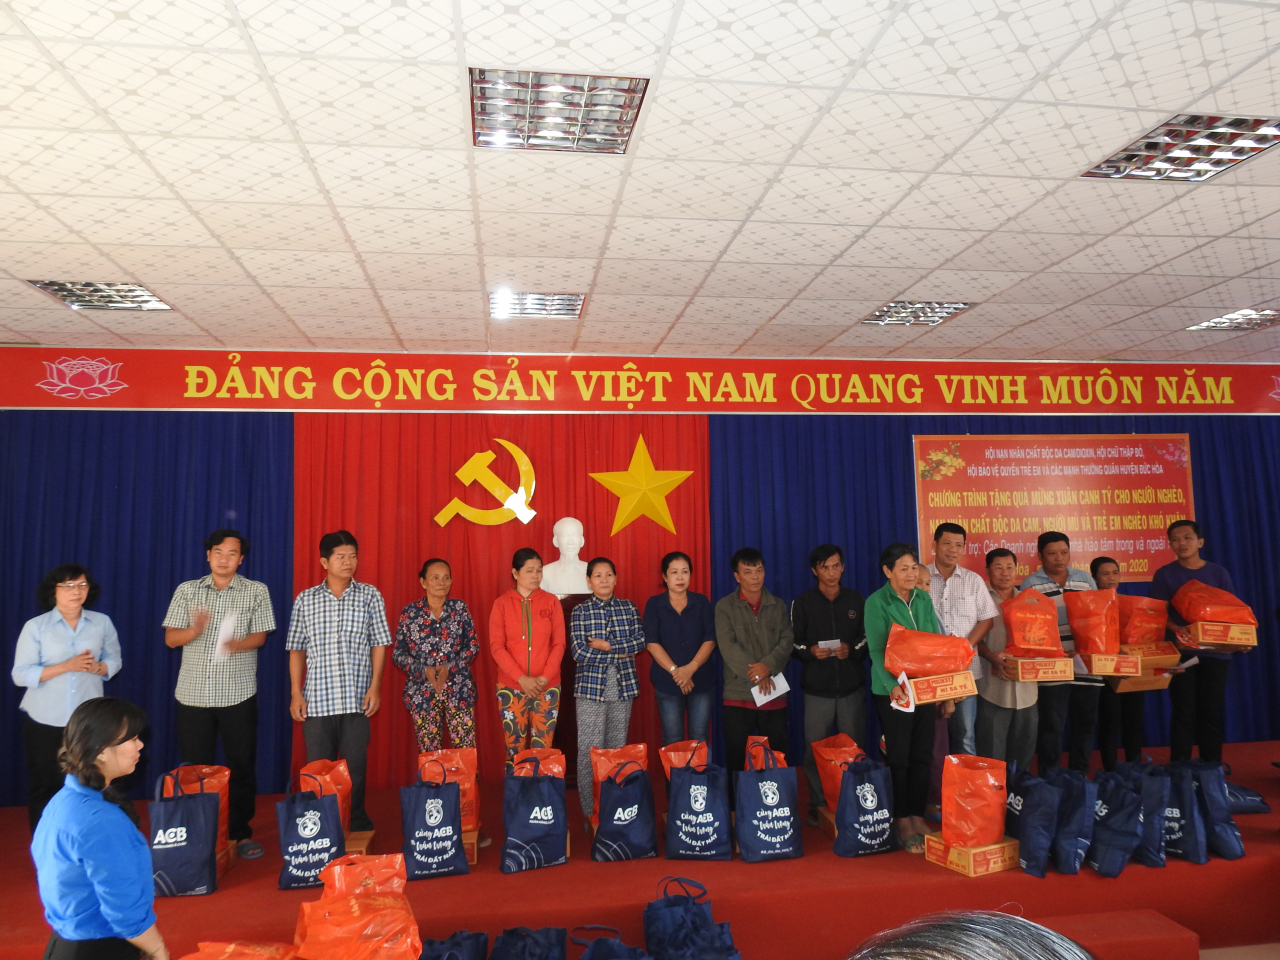 Bà Lê Thị Thu Hồng, Chủ tịch Hội nạn nhân chất độc da cam tỉnh Long An, (Người đứng đầu bên phải) phát biểu